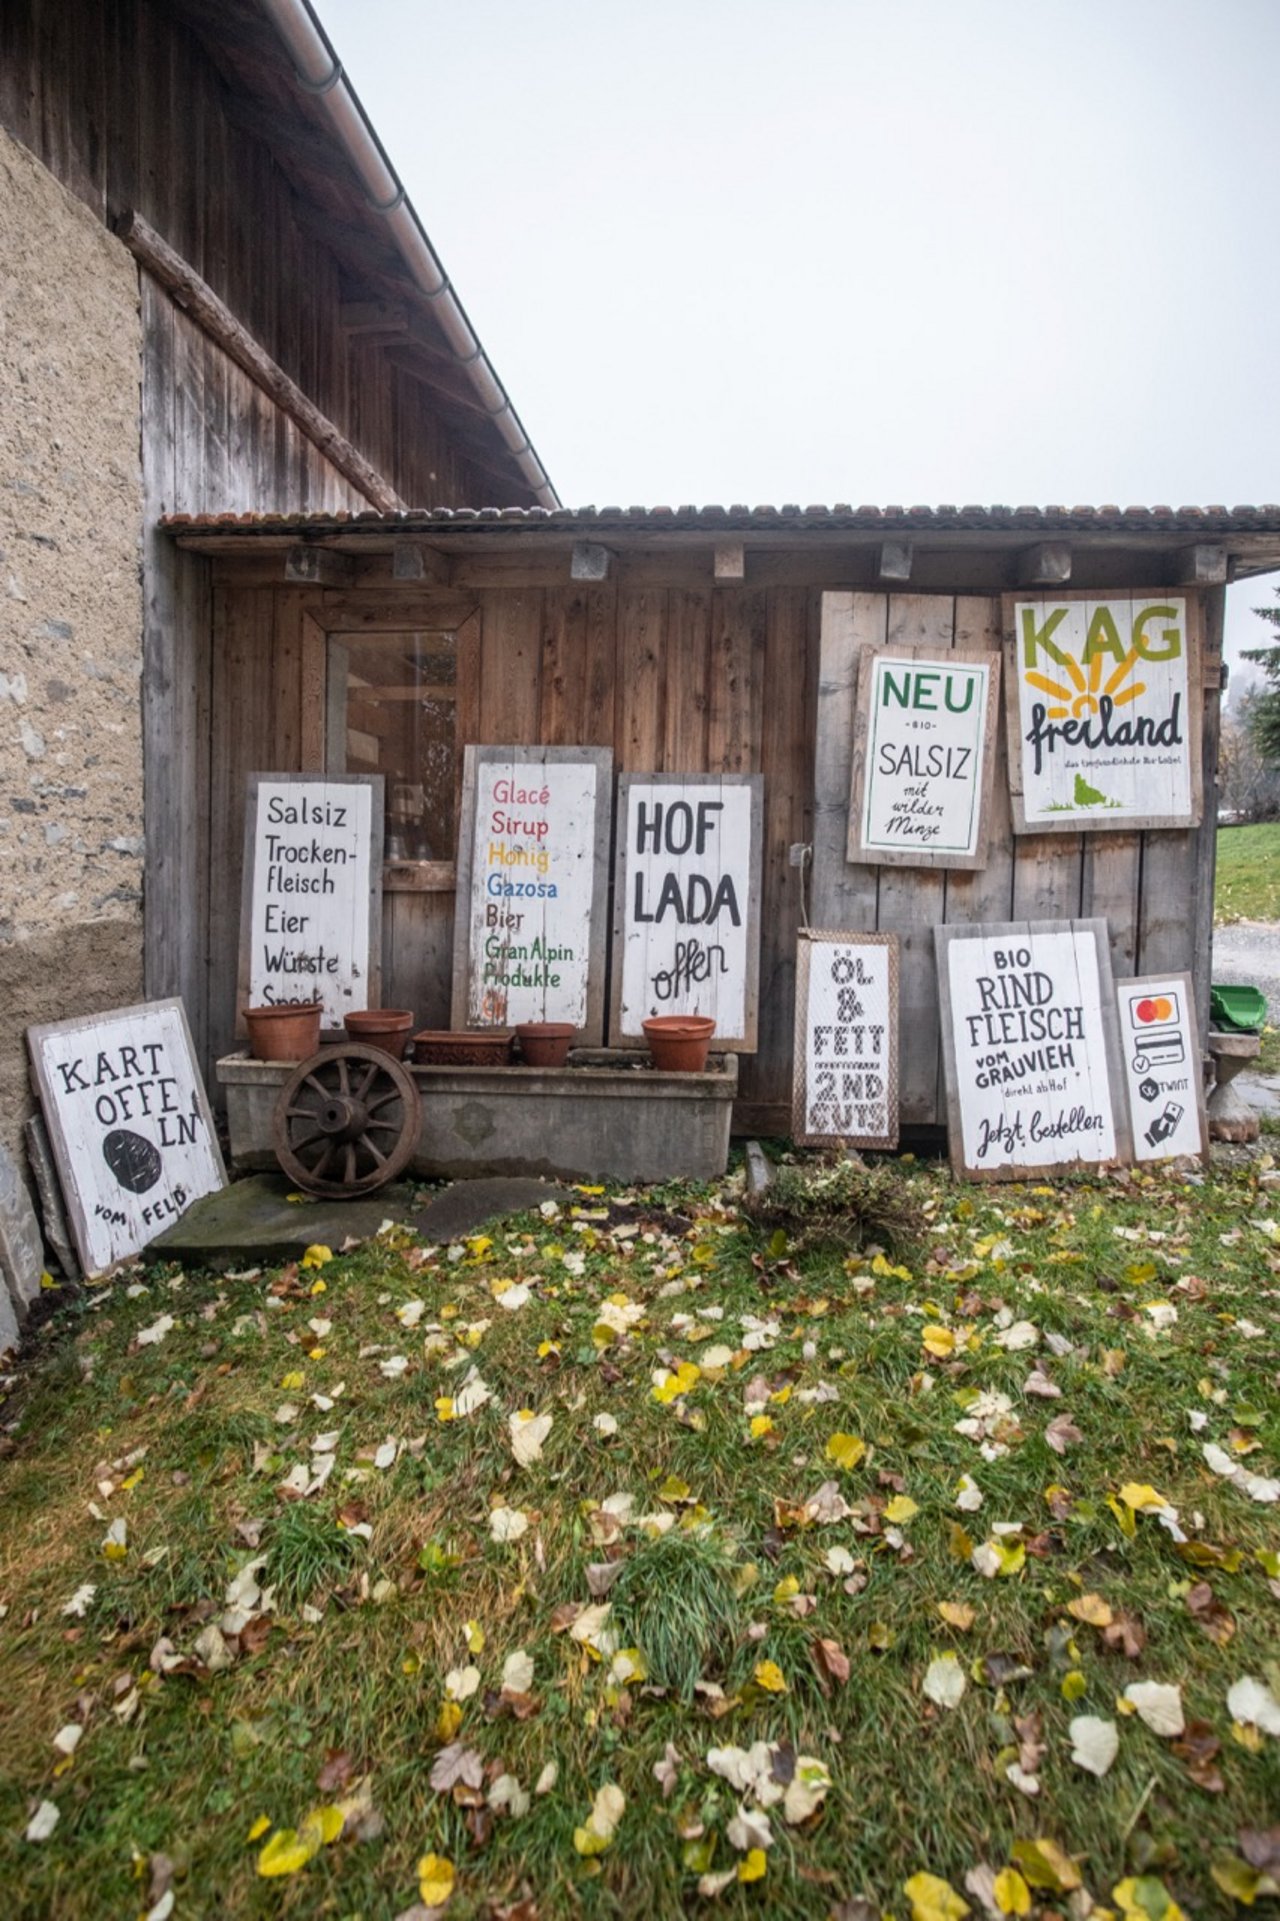 Auf dem Hof Dusch wird das Fleisch direktvermarktet: Hofladen, online, Gastronomie. Weitere Verkaufskanäle sind Granalpin, Biofarm und Naturkraftwerke. Bild: Matthias Nutt